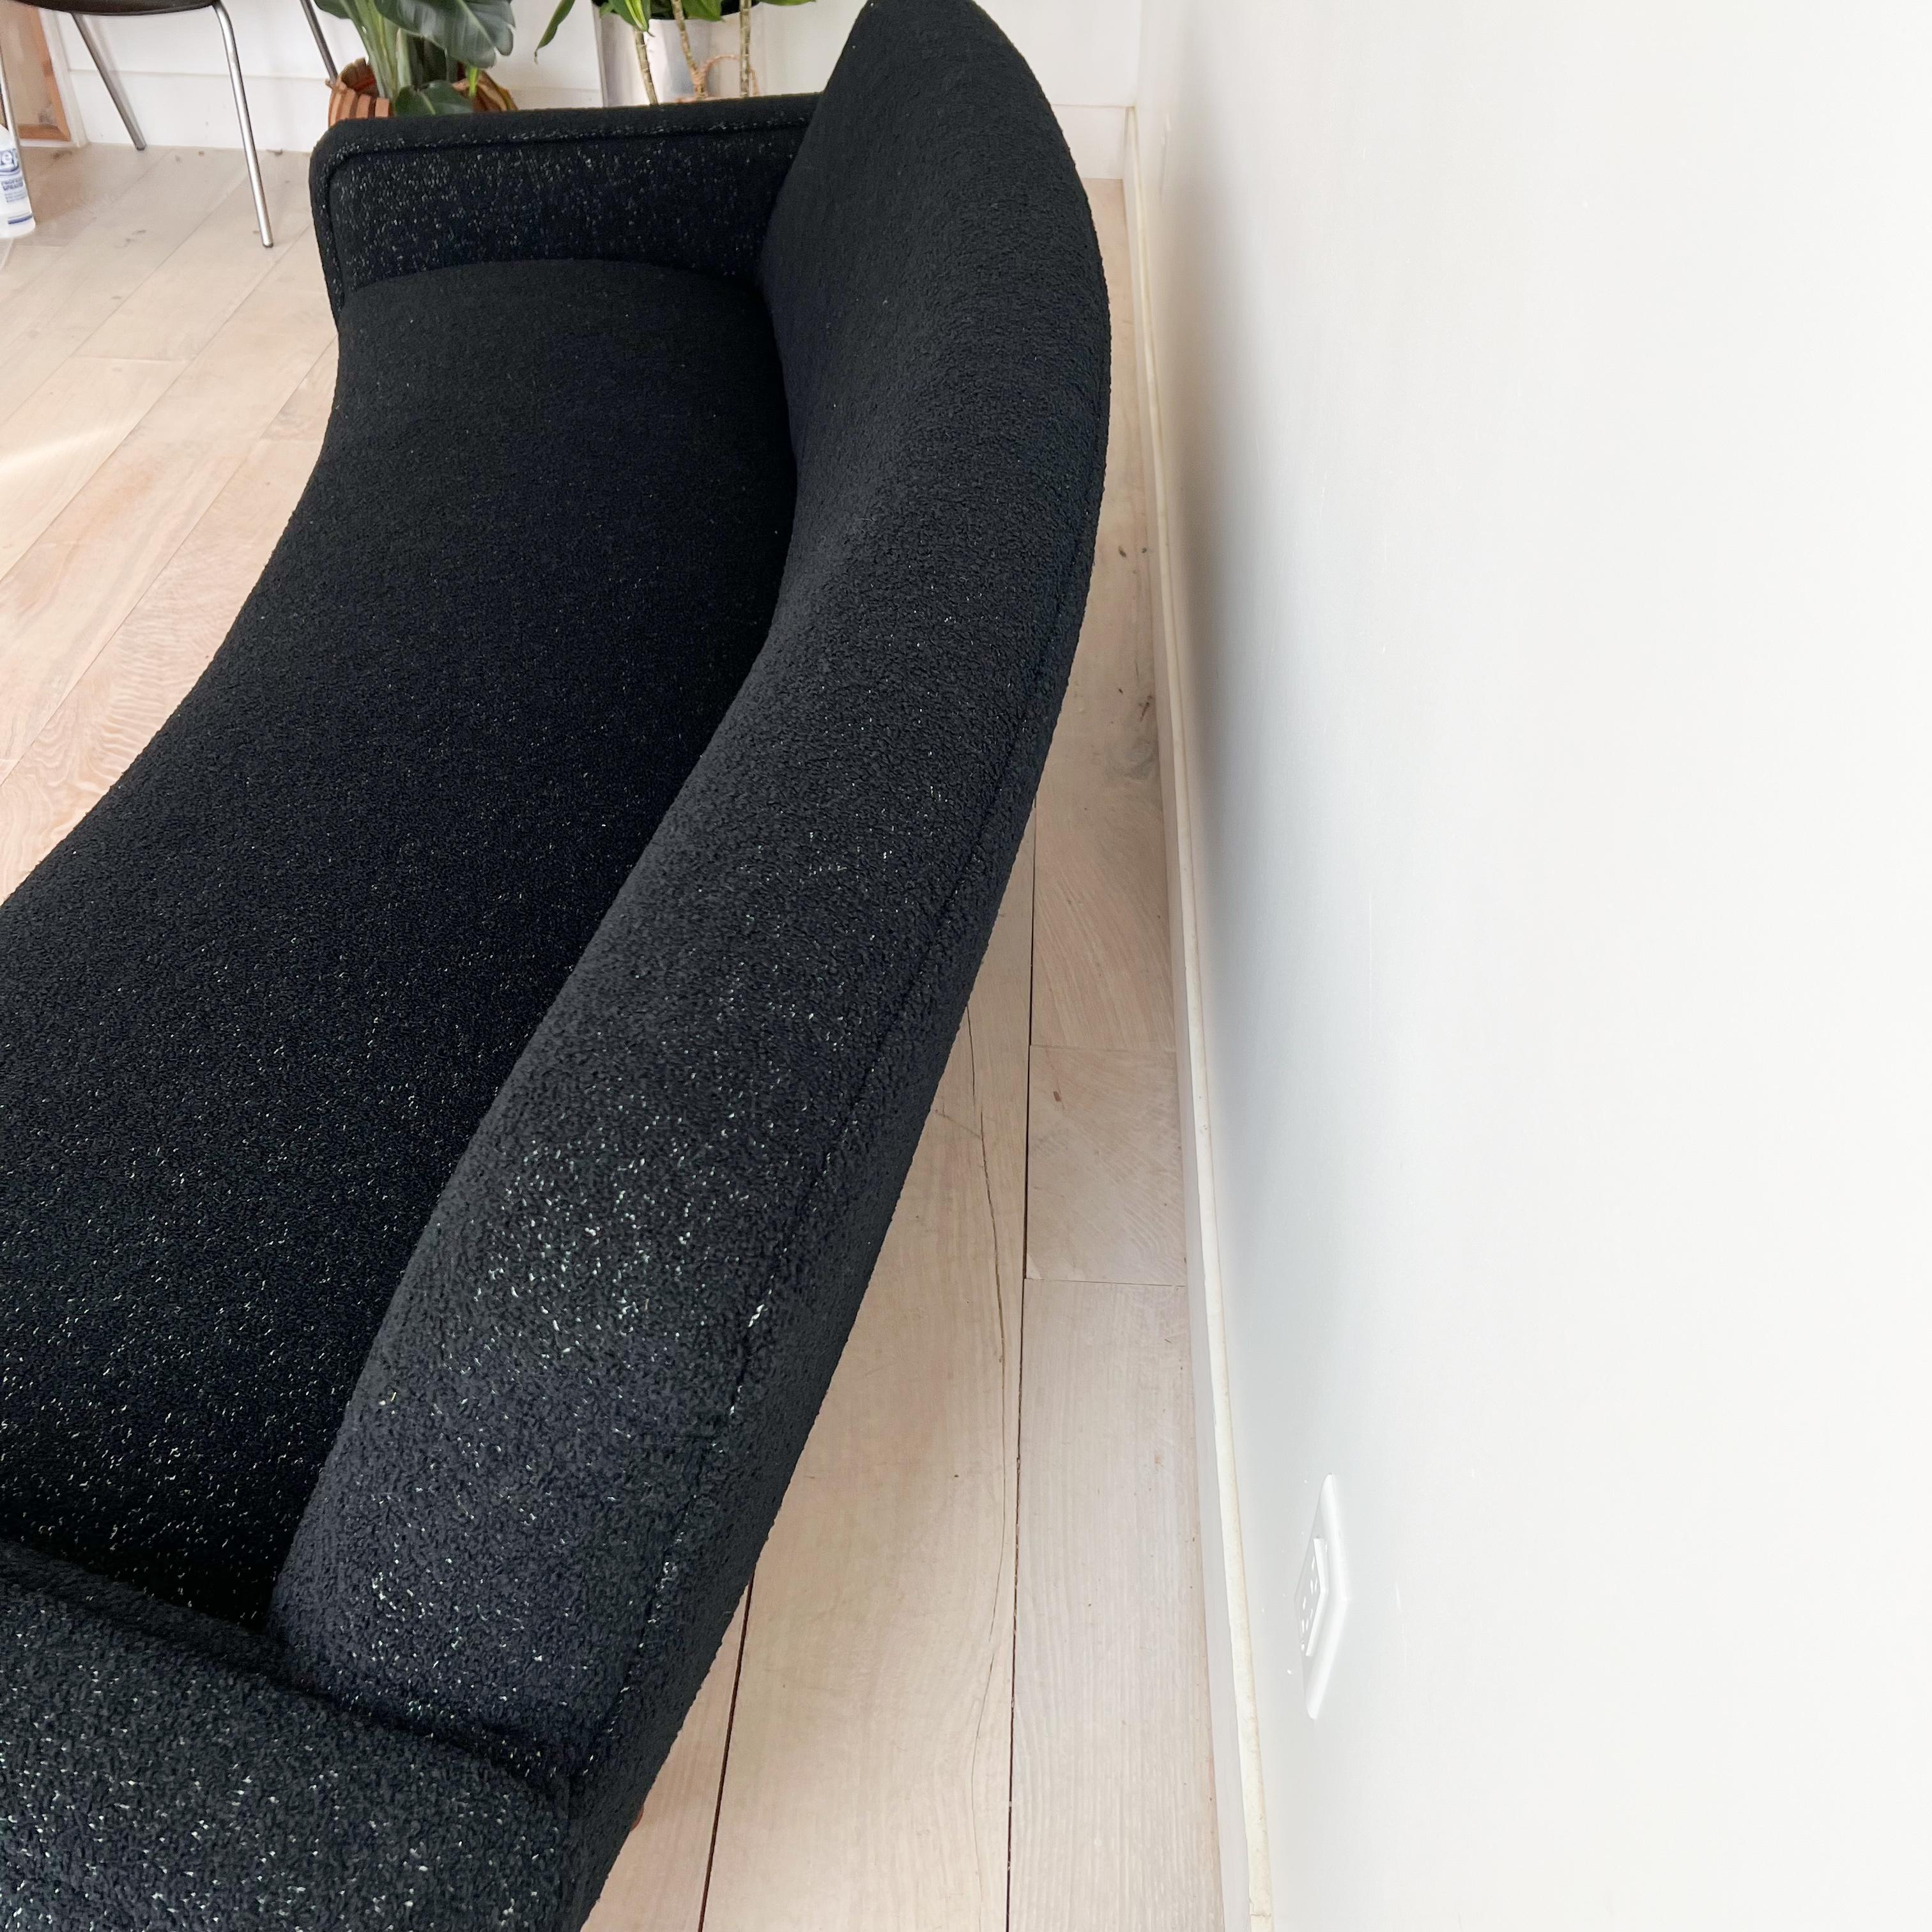 Illum Wikkelso's Rare Banana Curved Sofa - Model 450 - New Upholstery 1